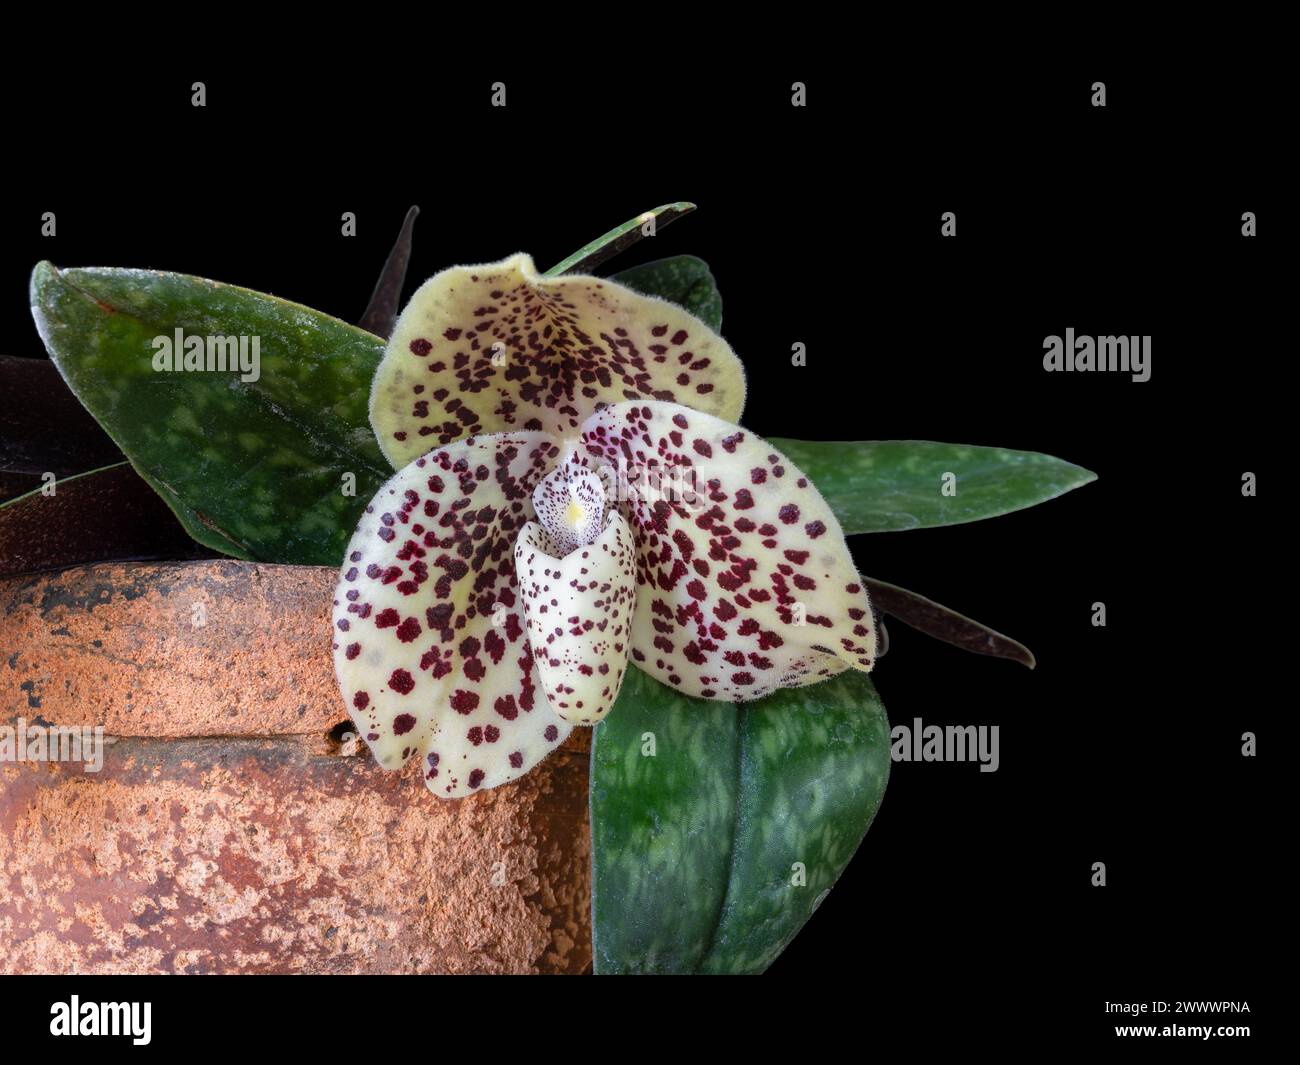 Vista ravvicinata della specie di orchidee paphiopedilum bellatulum o di uovo in un nido con fiore bianco viola e cremoso isolato su sfondo nero Foto Stock